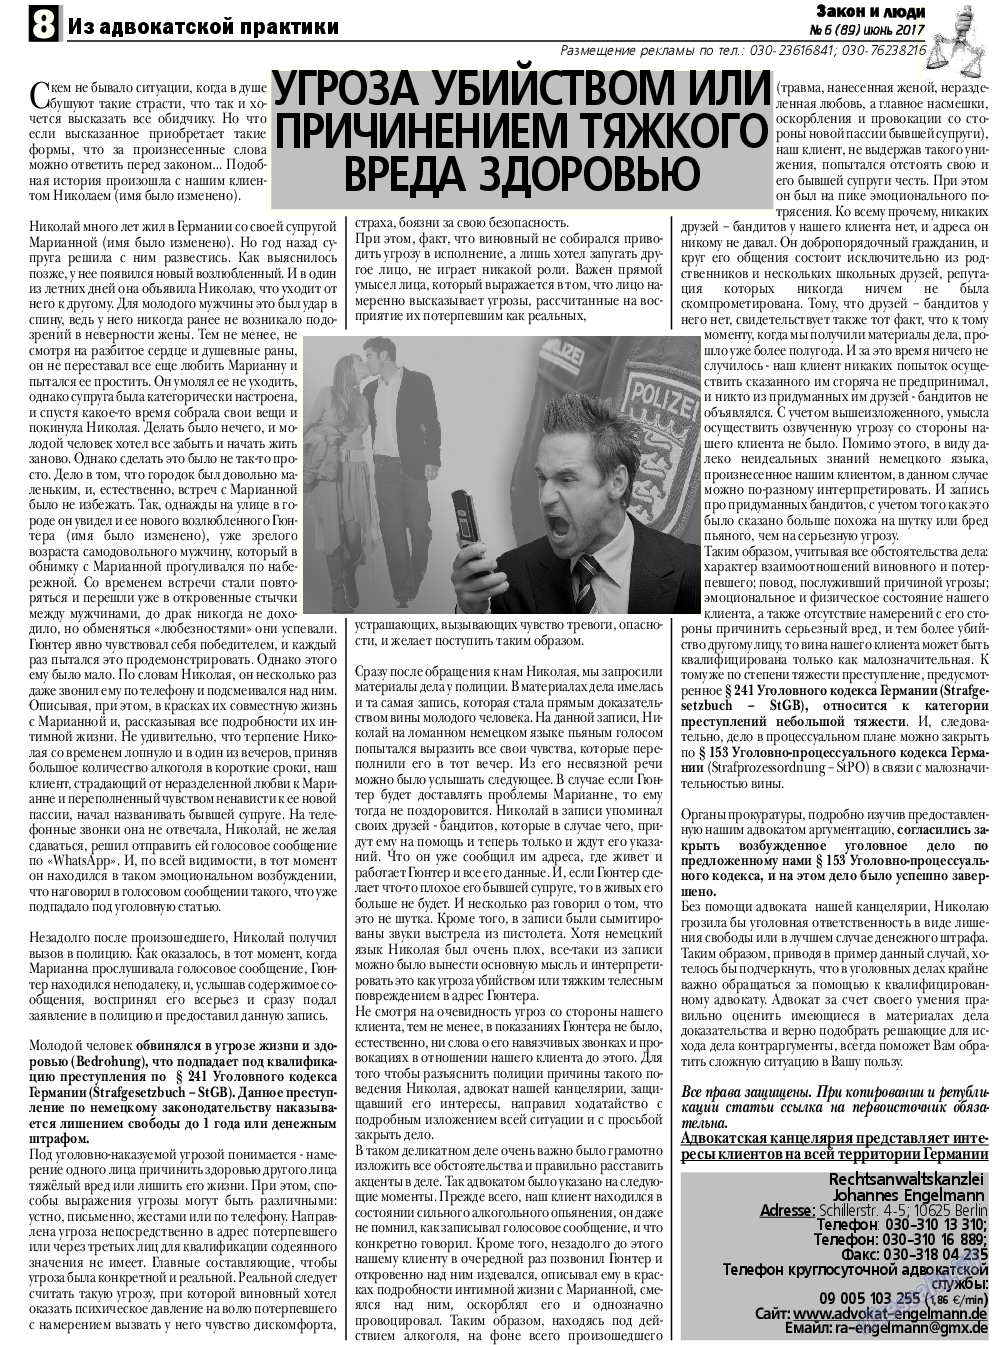 Закон и люди, газета. 2017 №6 стр.8